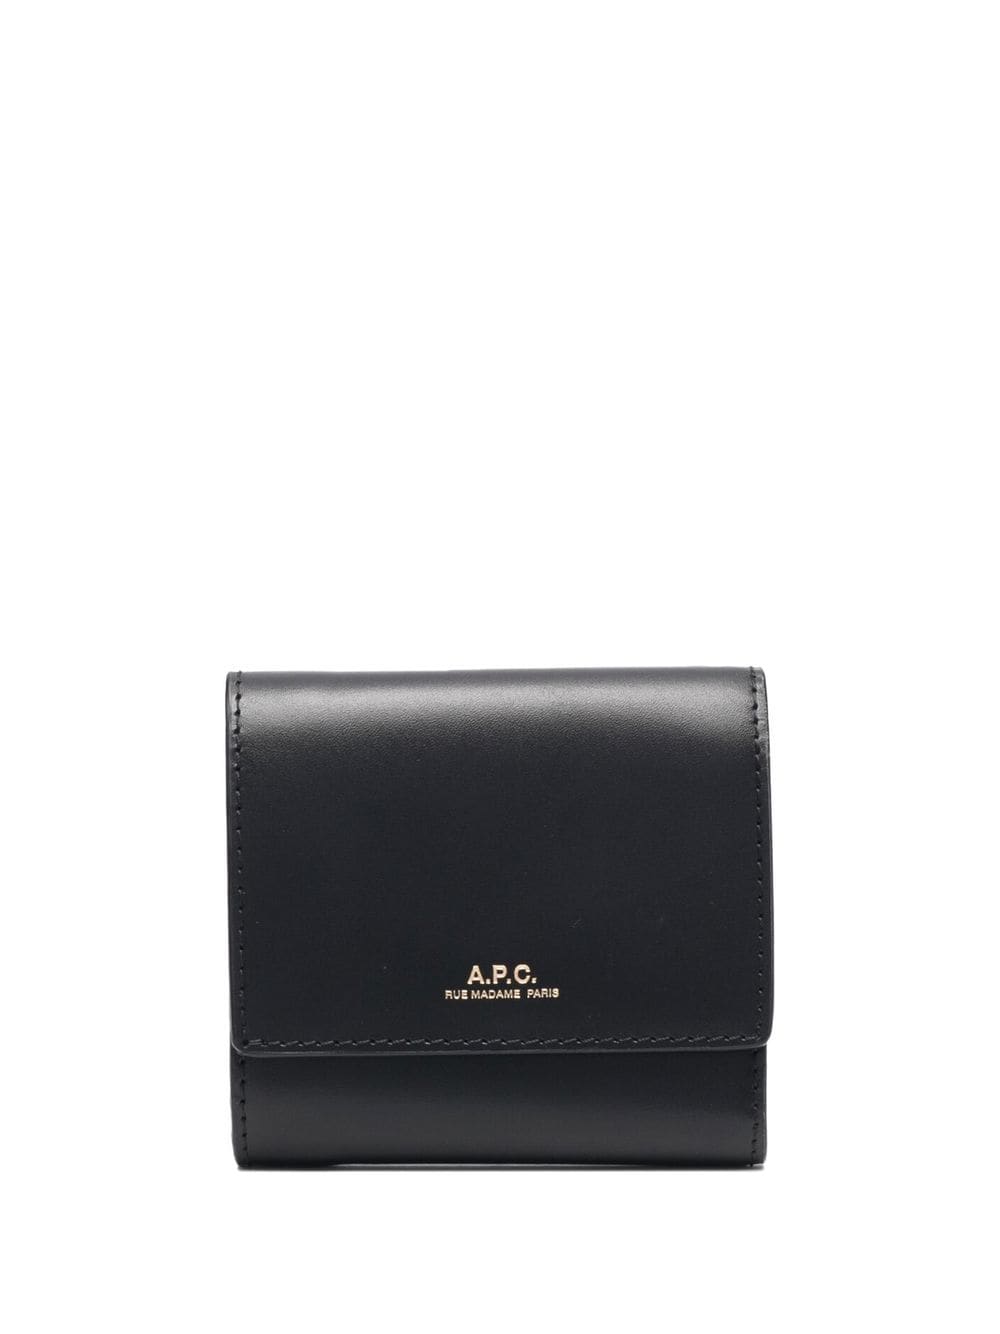 A.P.C. trifold leather wallet - Black von A.P.C.